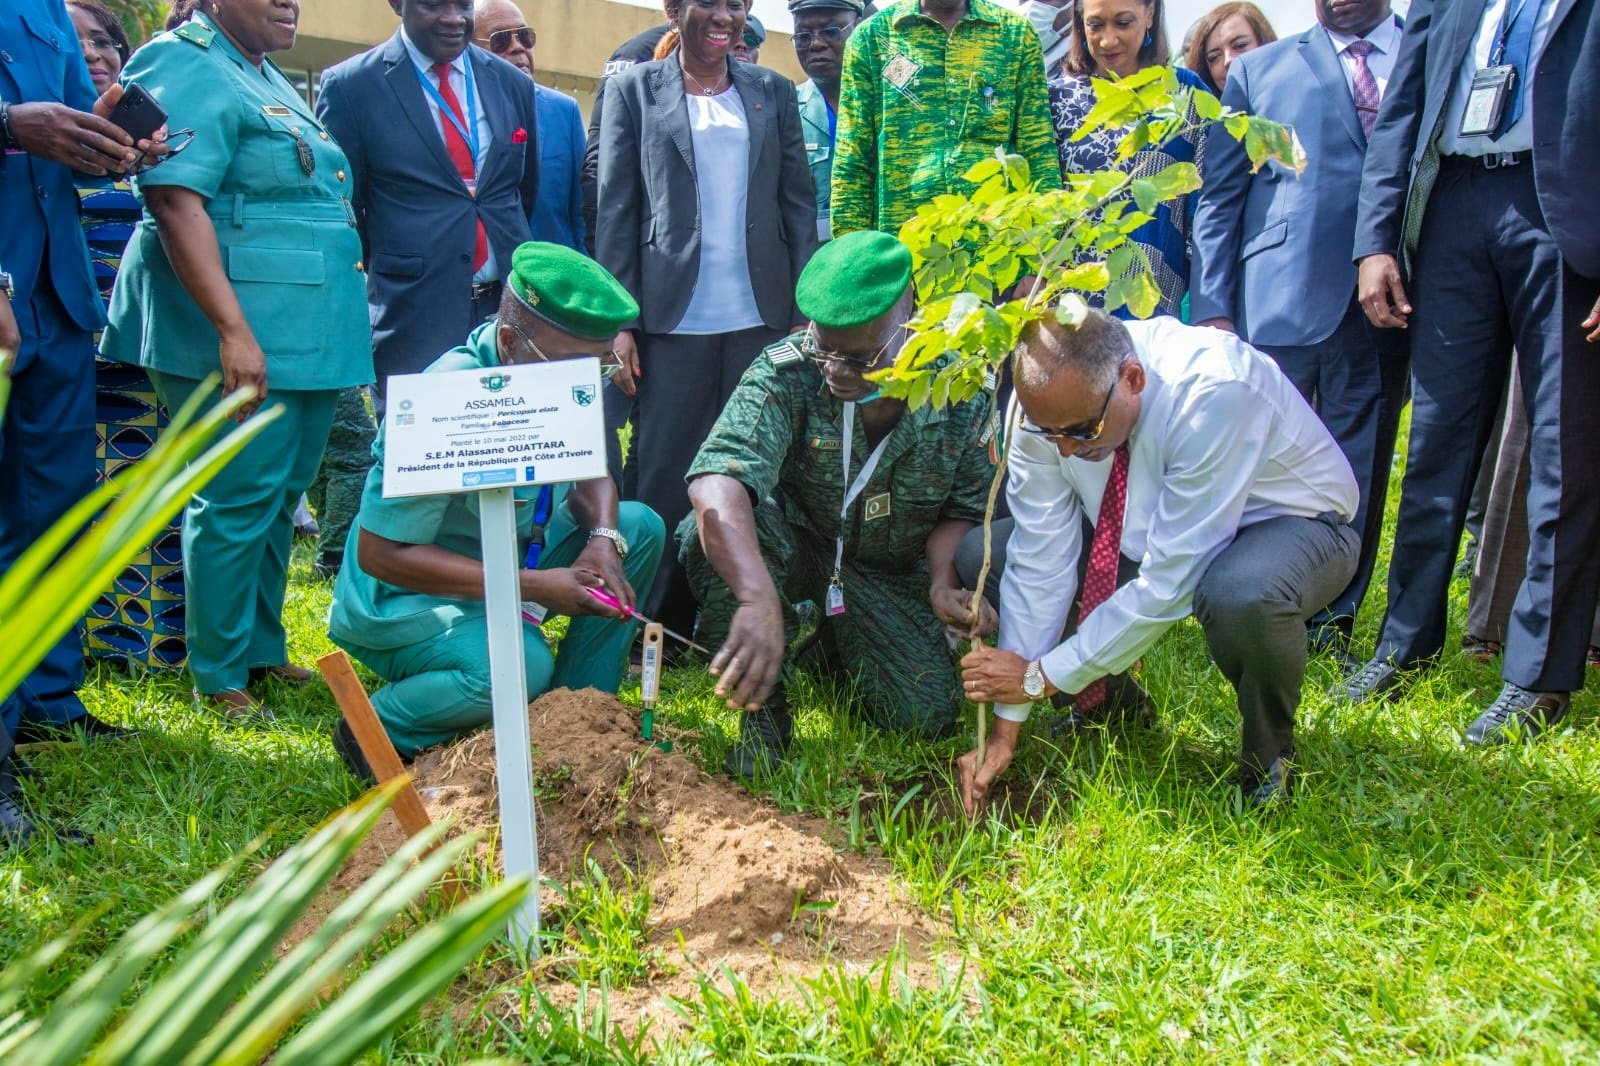 restauration-du-couvert-forestier-ivoirien-le-premier-ministre-patrick-achi-et-une-vingtaine-de-personnalites-plantent-7-essences-locales-darbres